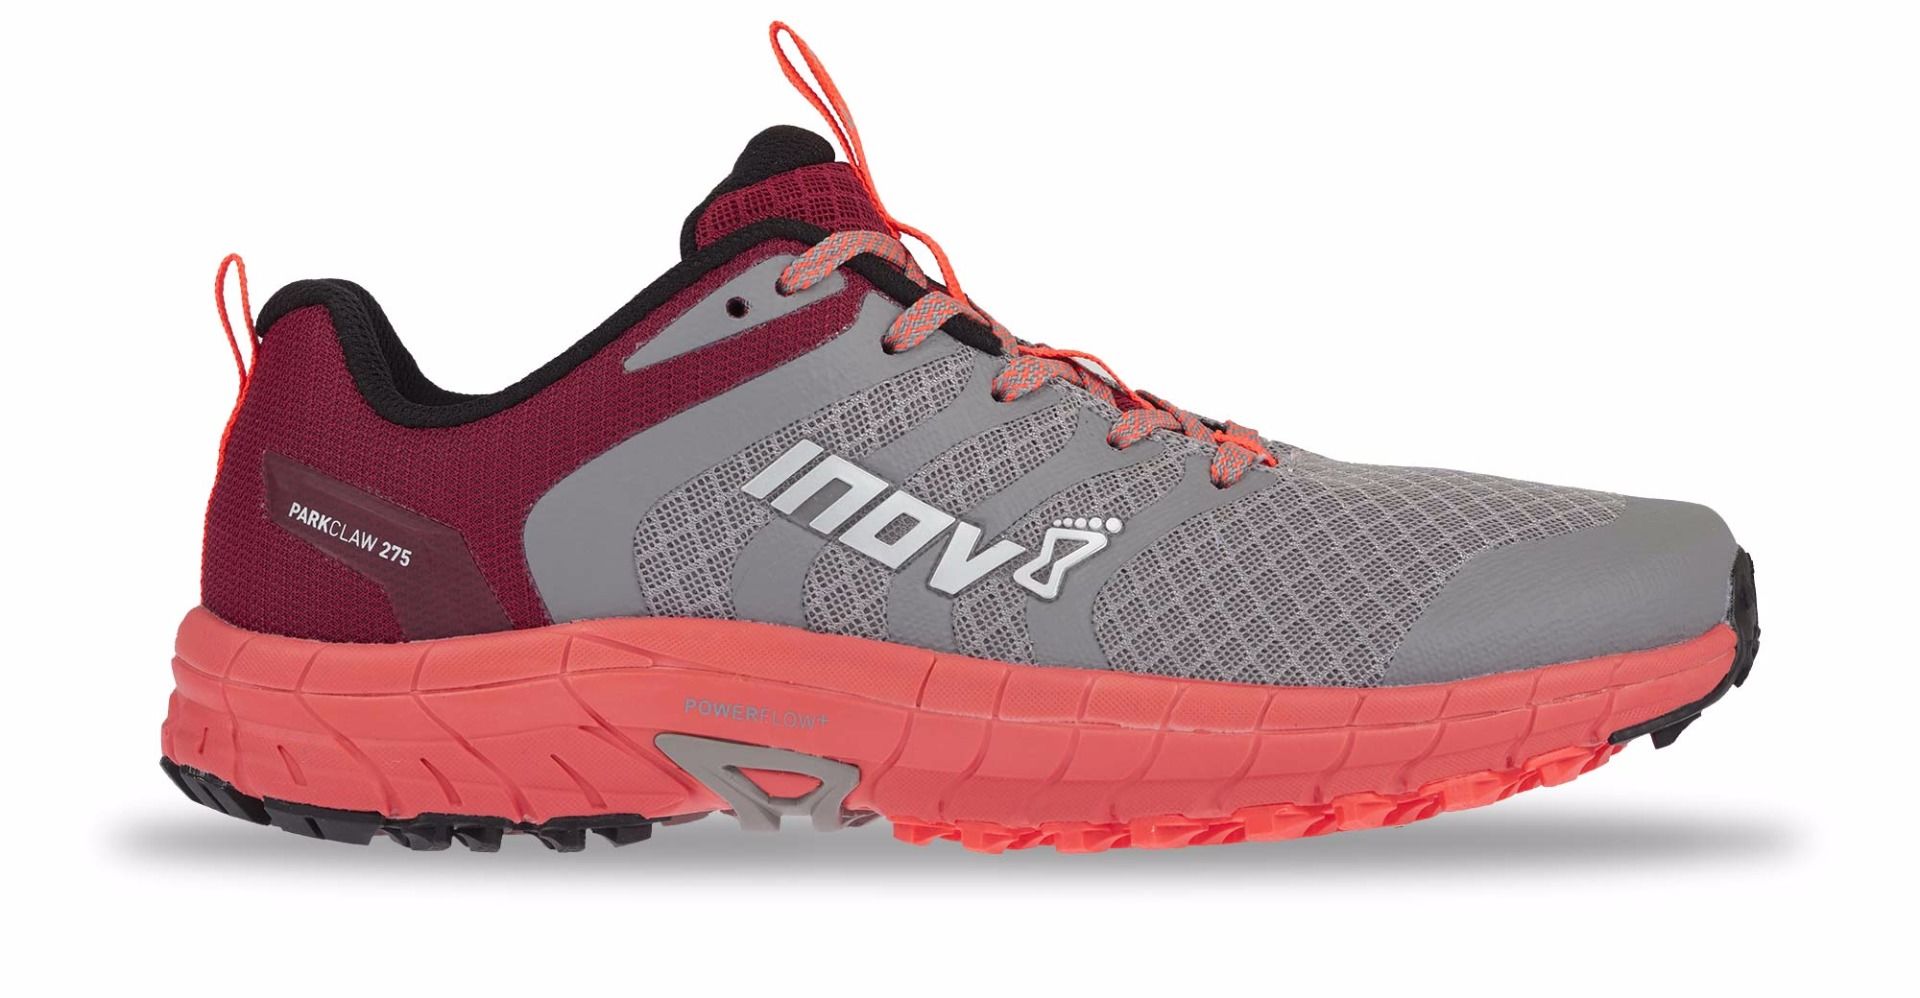 inov 8 women's road running shoes